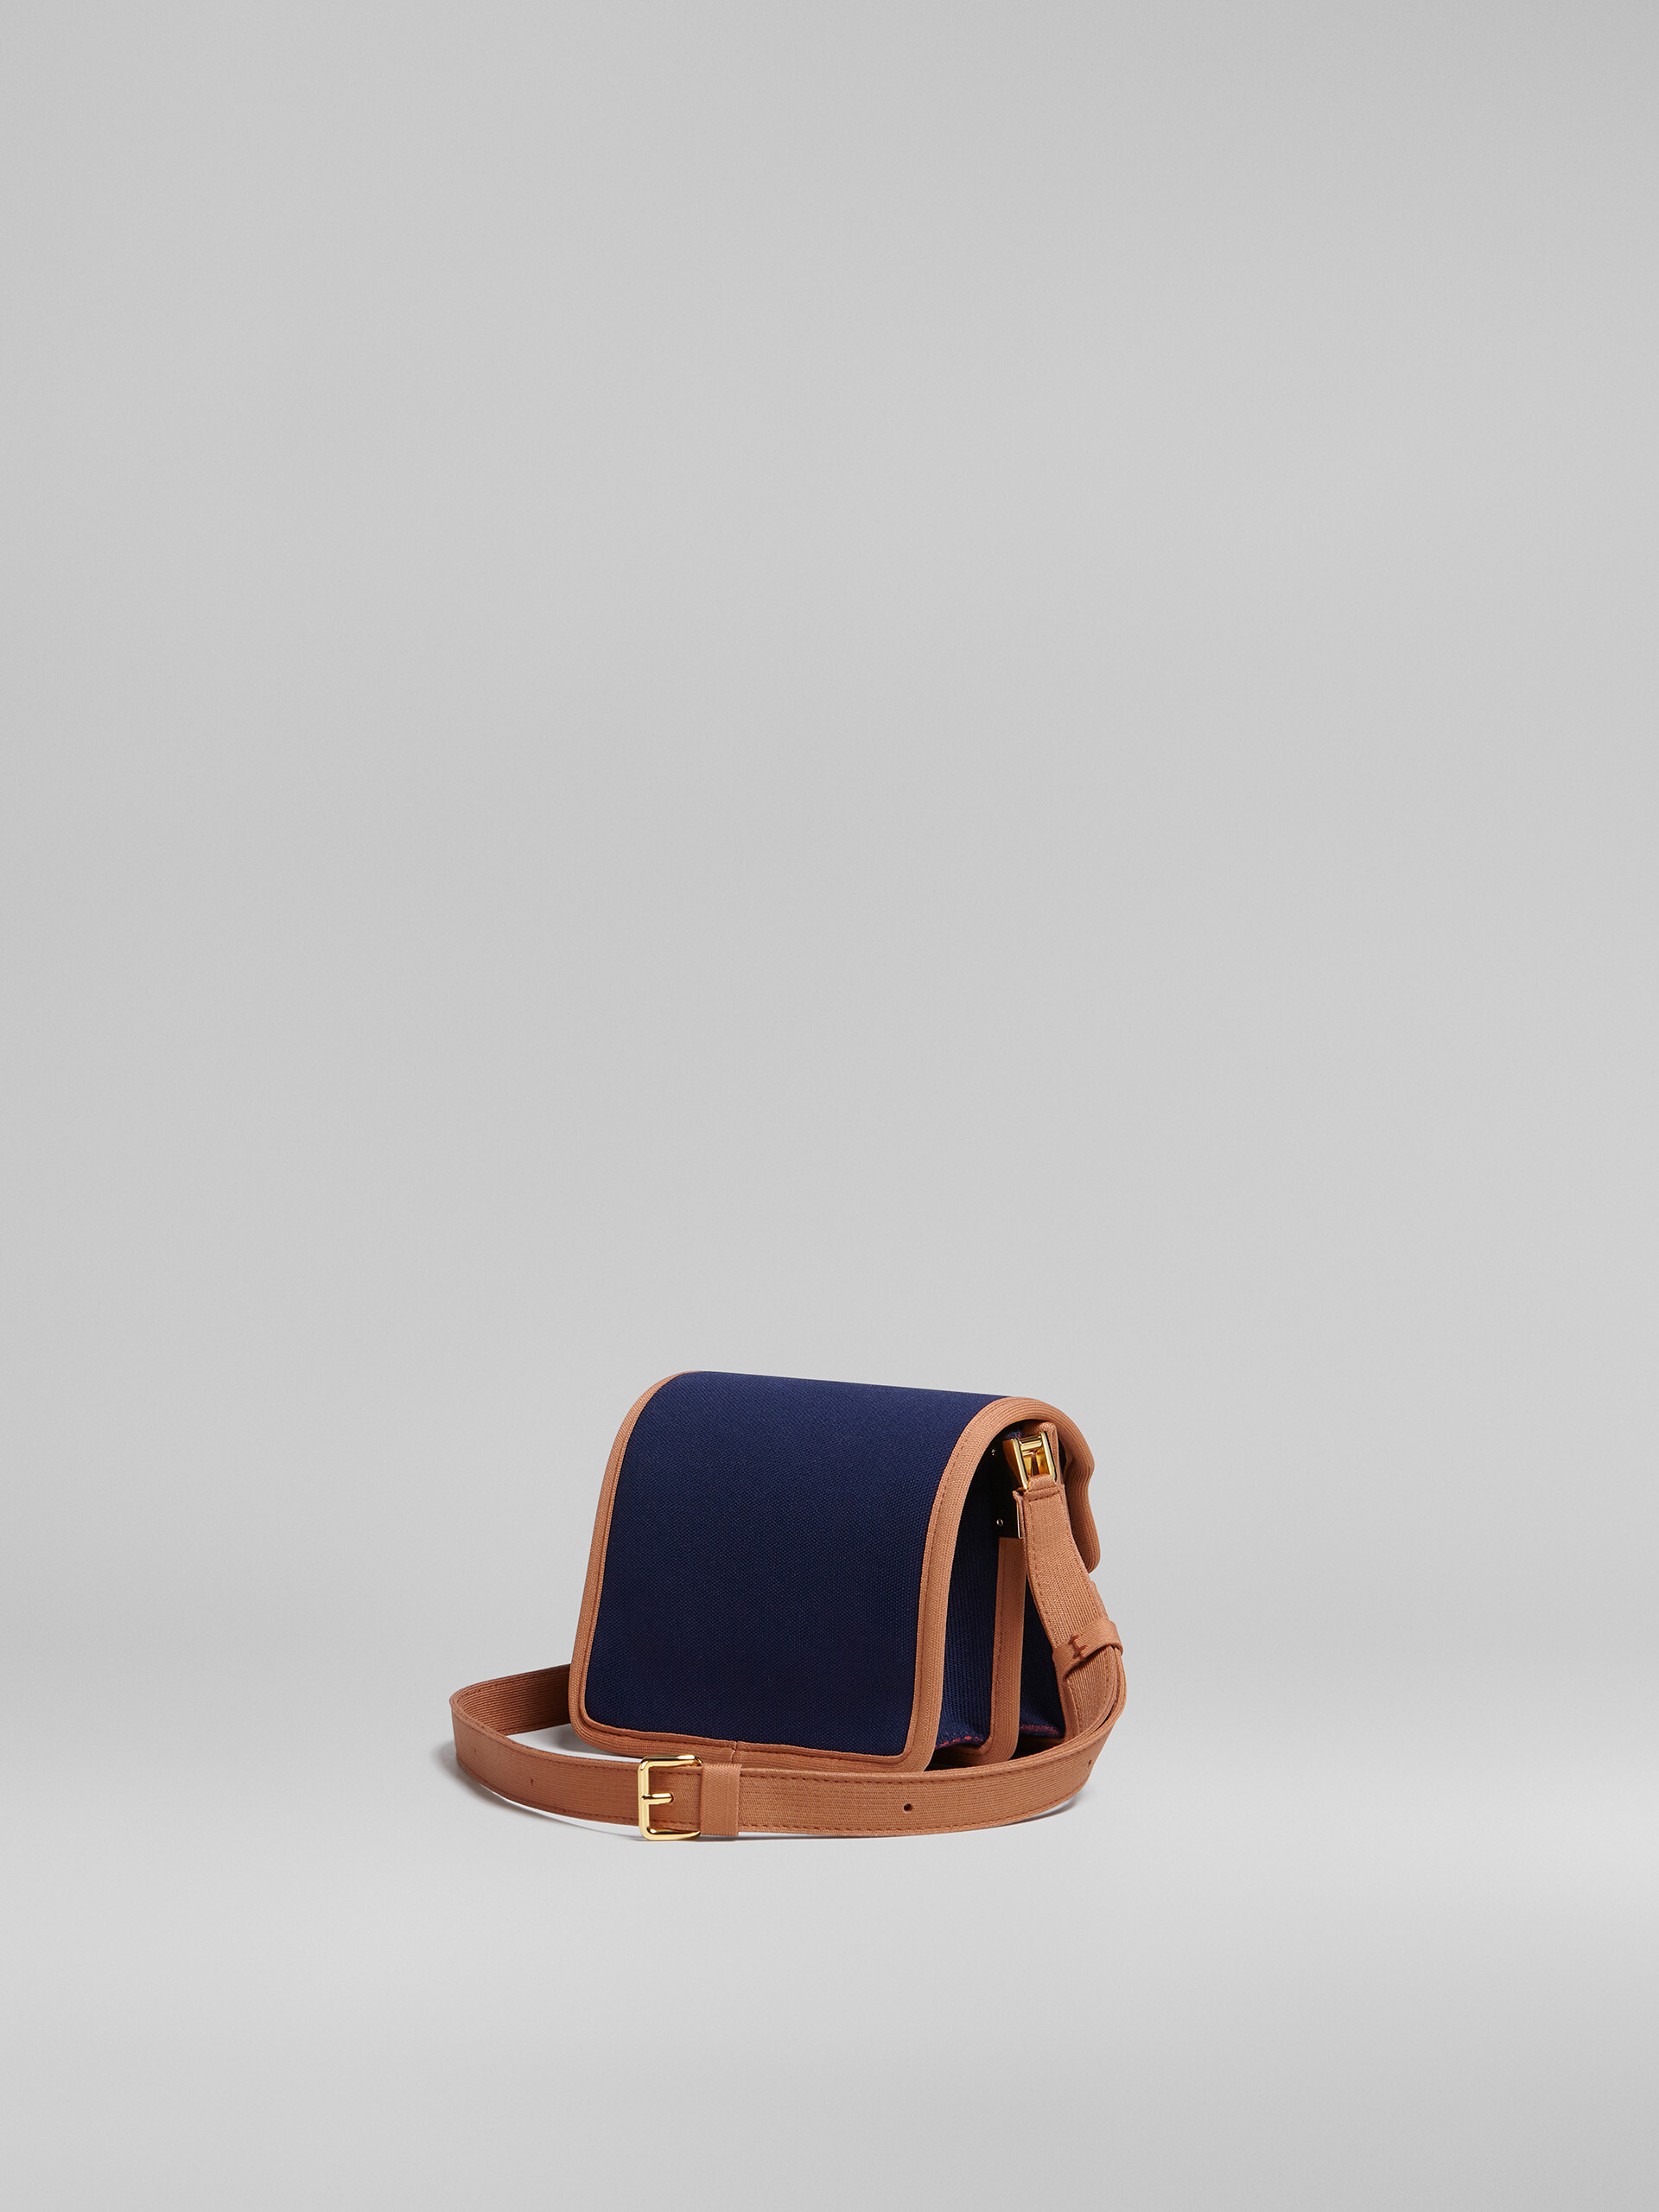 TRUNK SOFT mini bag in blue and brown jacquard - Shoulder Bag - Image 3